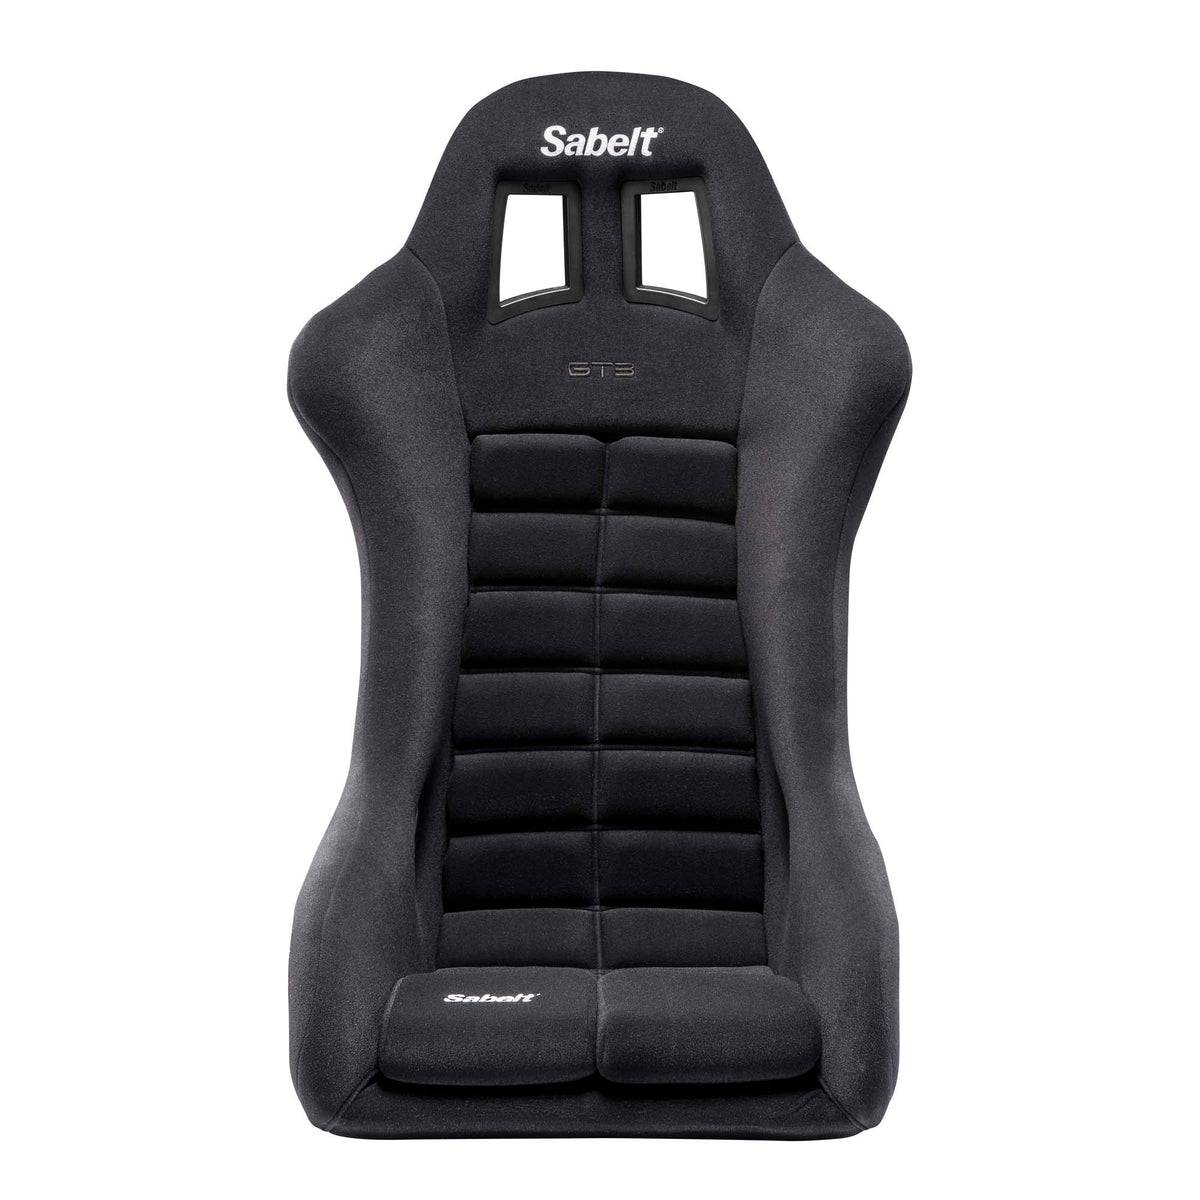 Sabelt GT3 Fiberglass Racing Seat